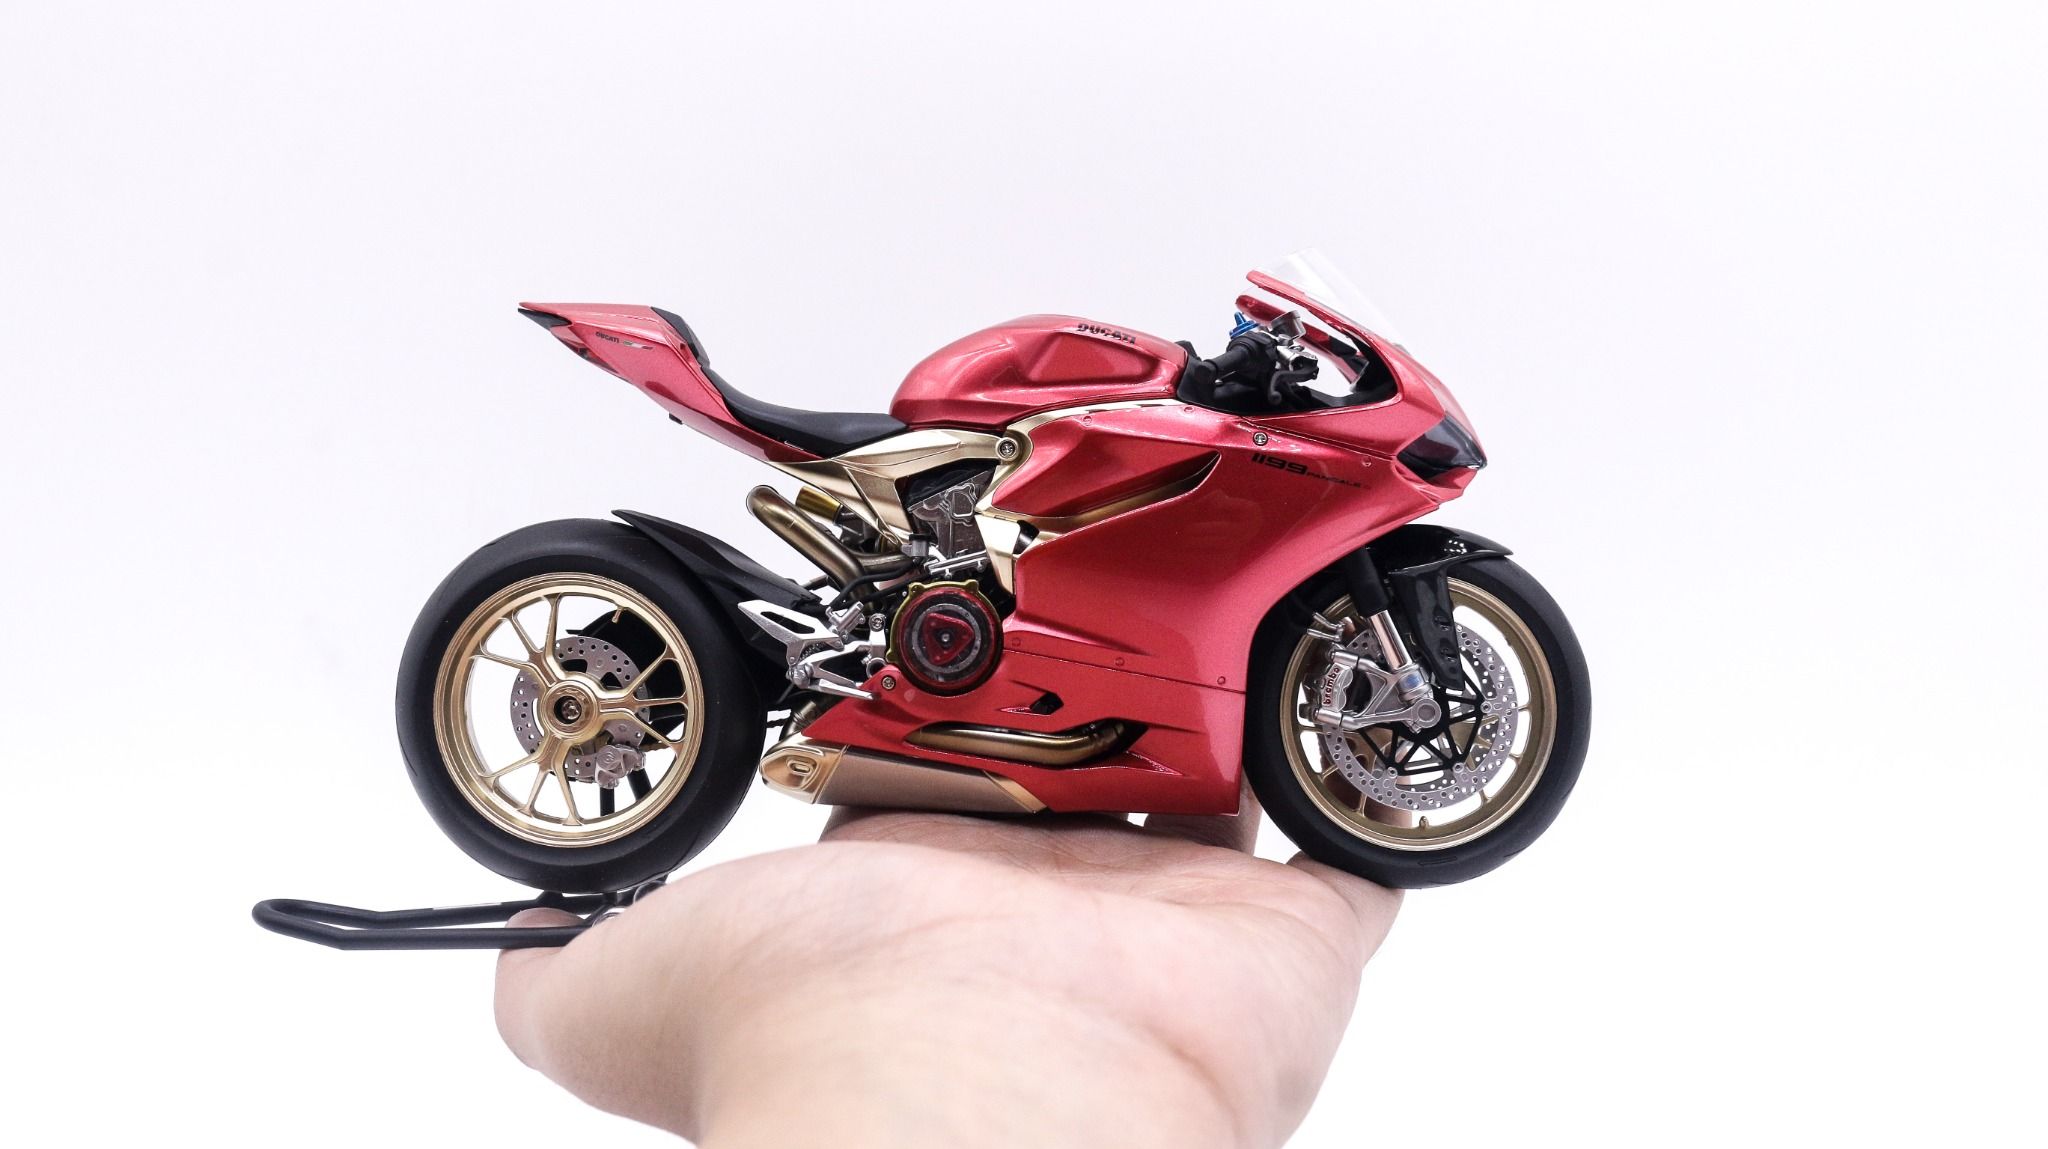  Mô hình xe cao cấp Ducati 1199 Iron Man Version độ nồi 1 1:12 Tamiya D227N 